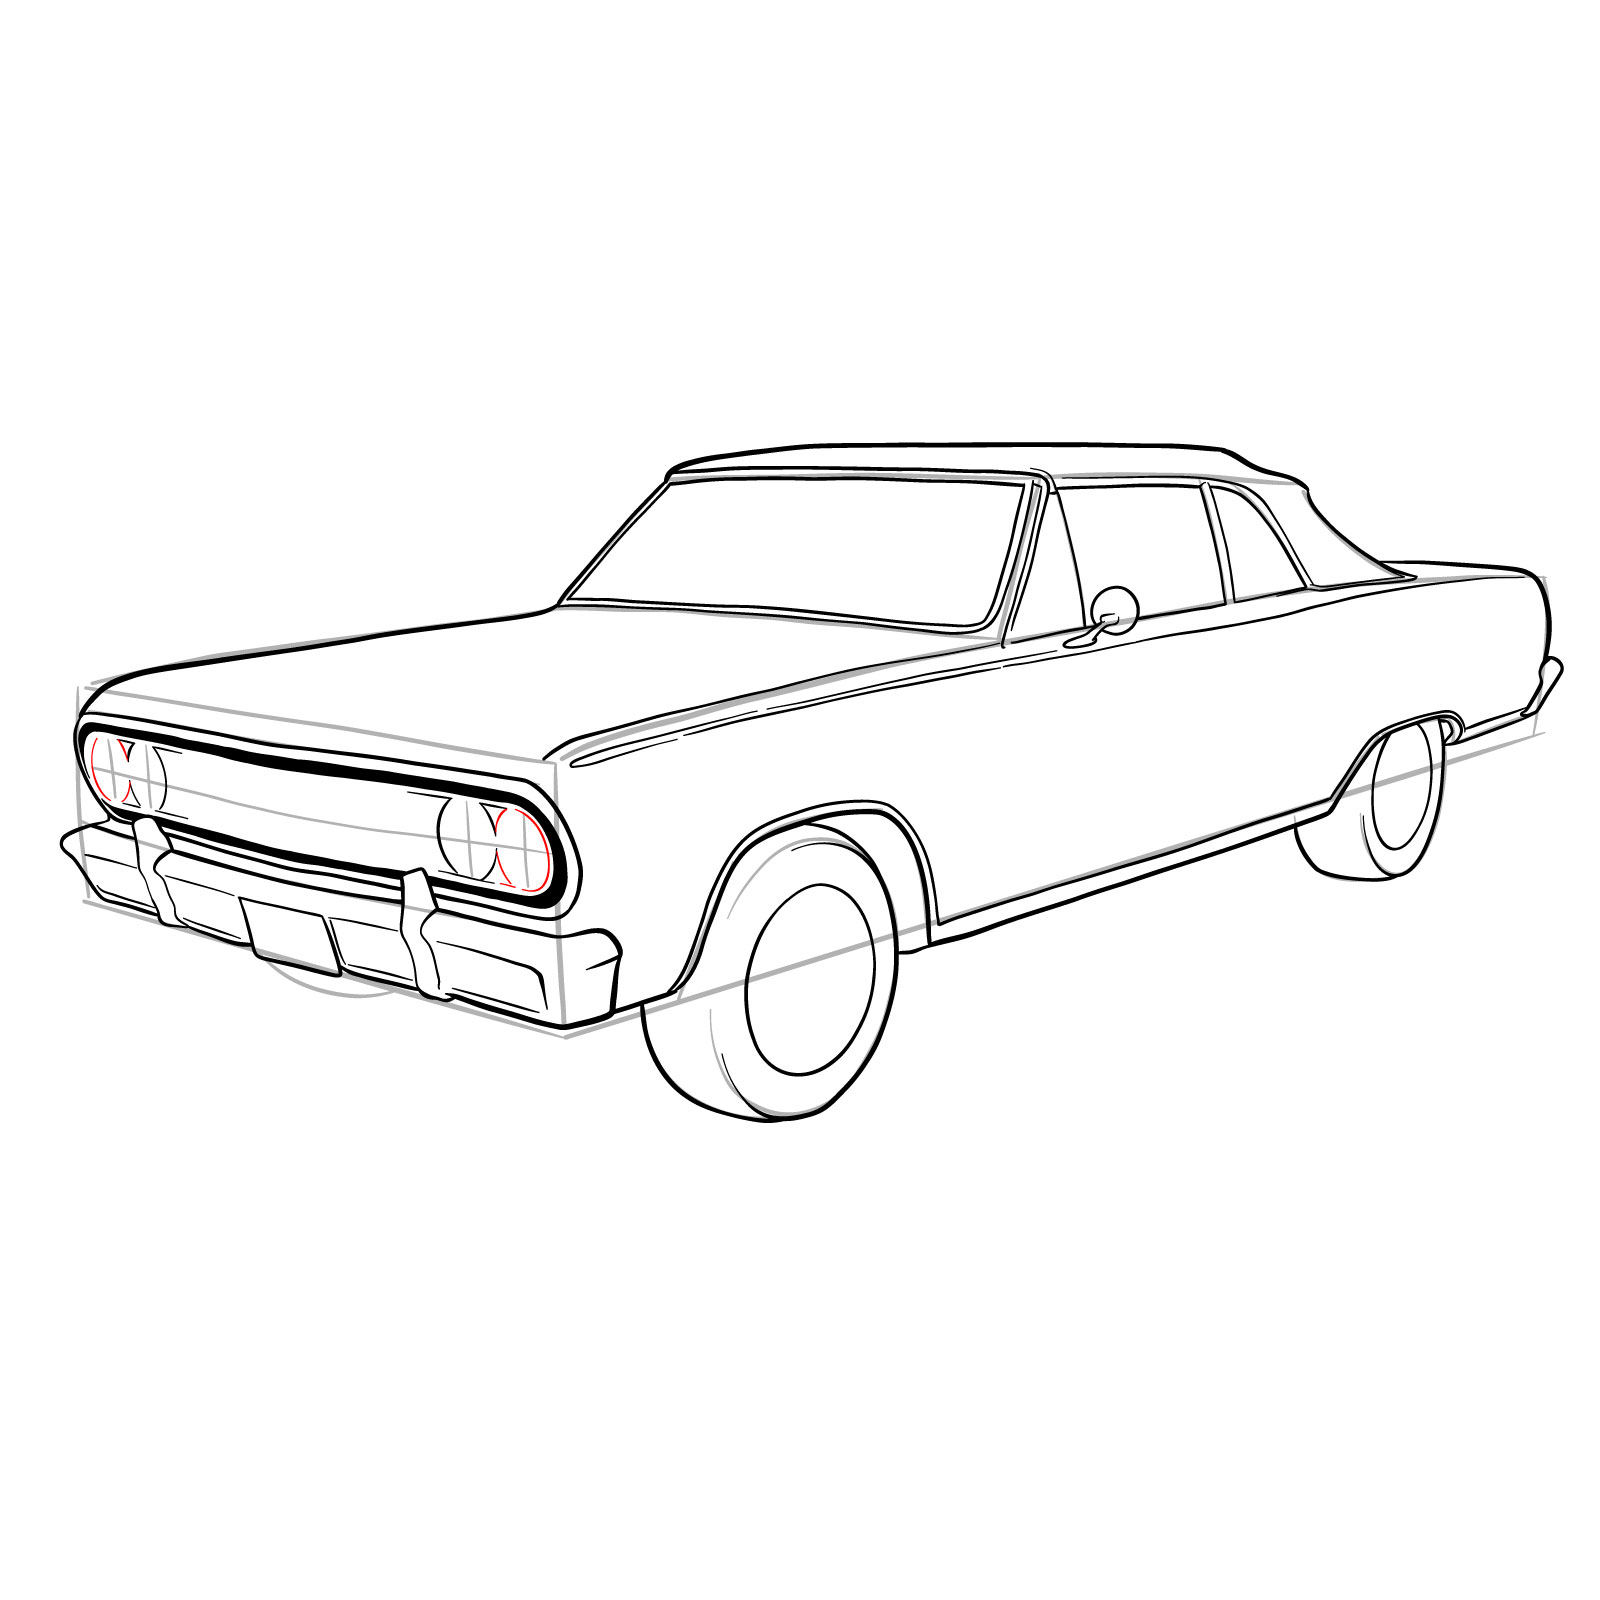 How to draw 1964 Chevrolet Malibu - step 30